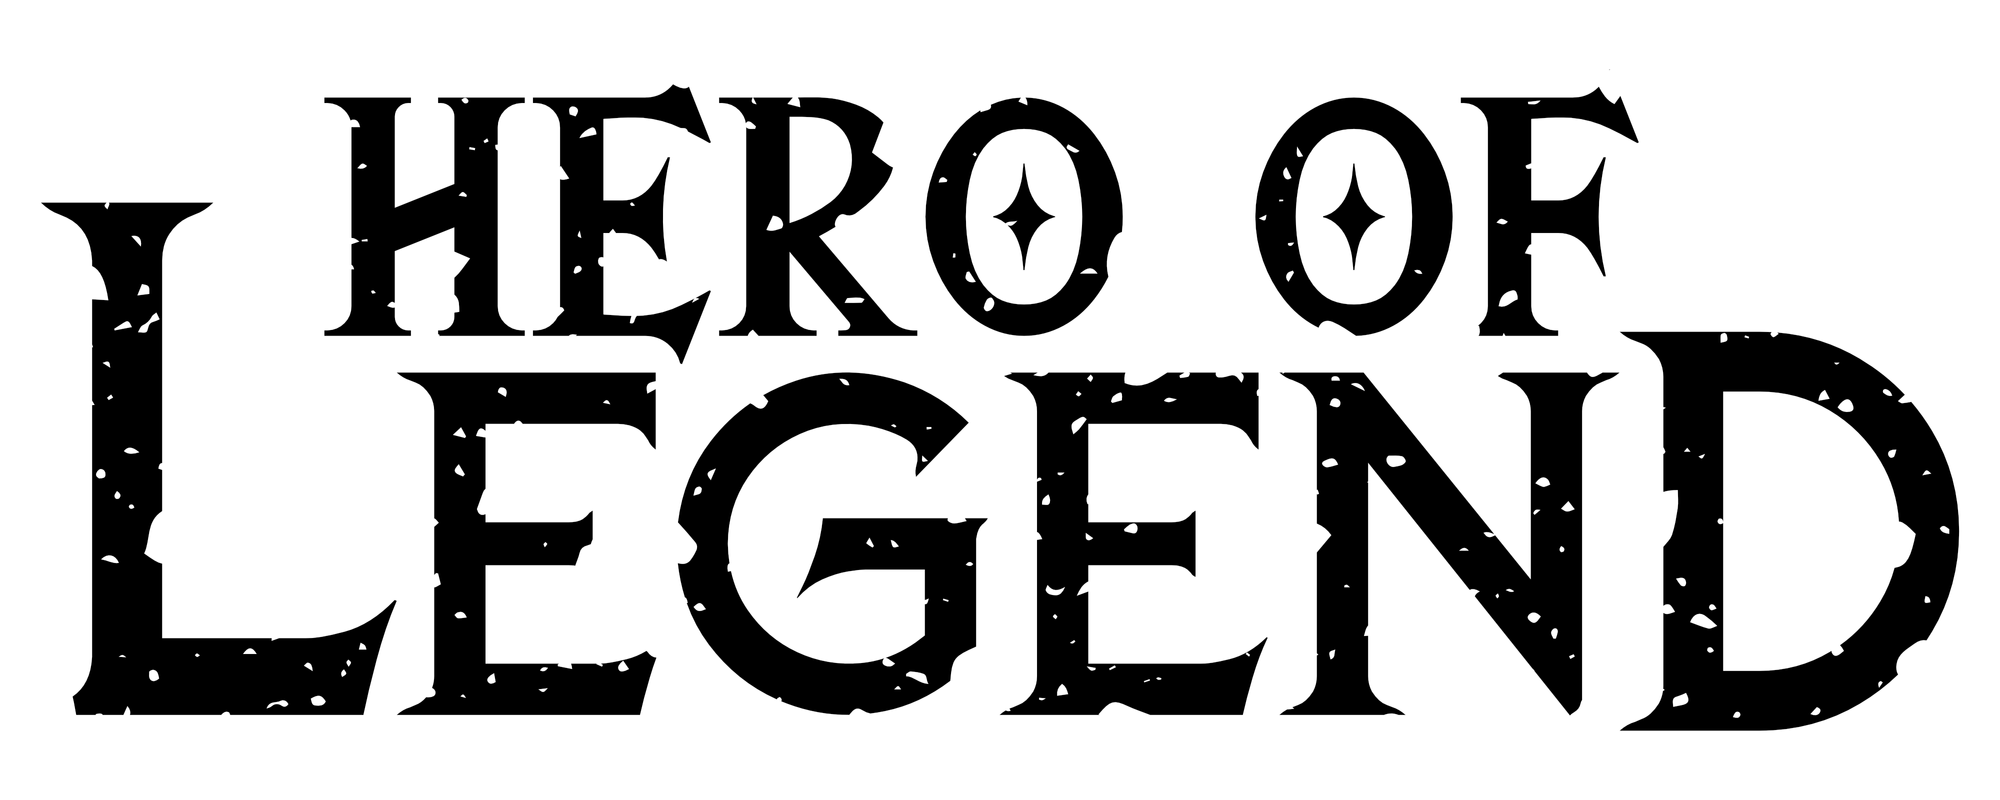 1 - Hero of Legend